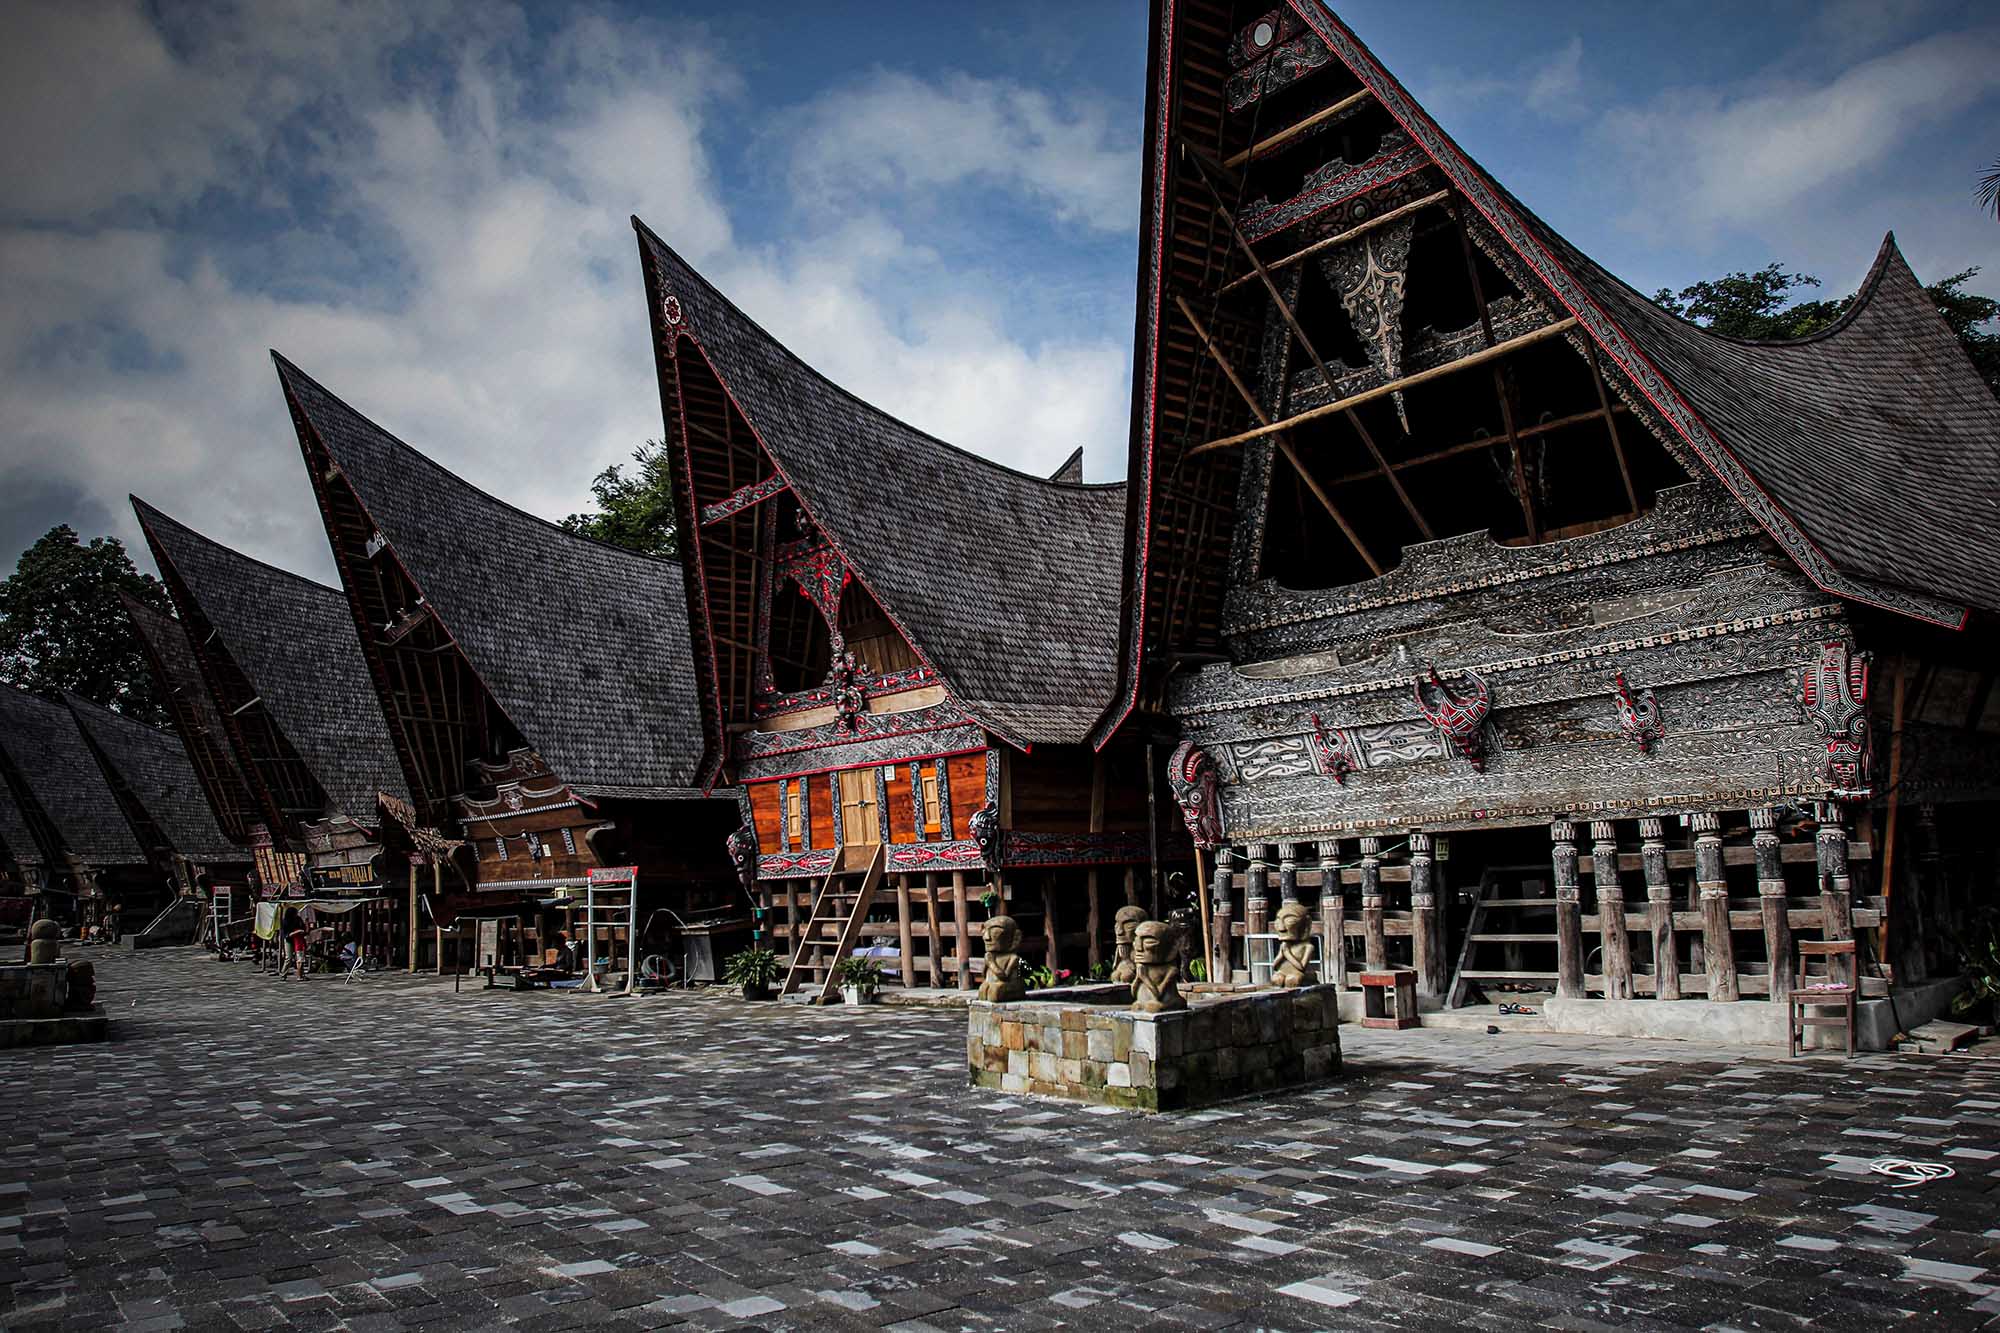 Wisata Budaya! Mengunjungi 6 Rumah Adat Terkenal di Indonesia 